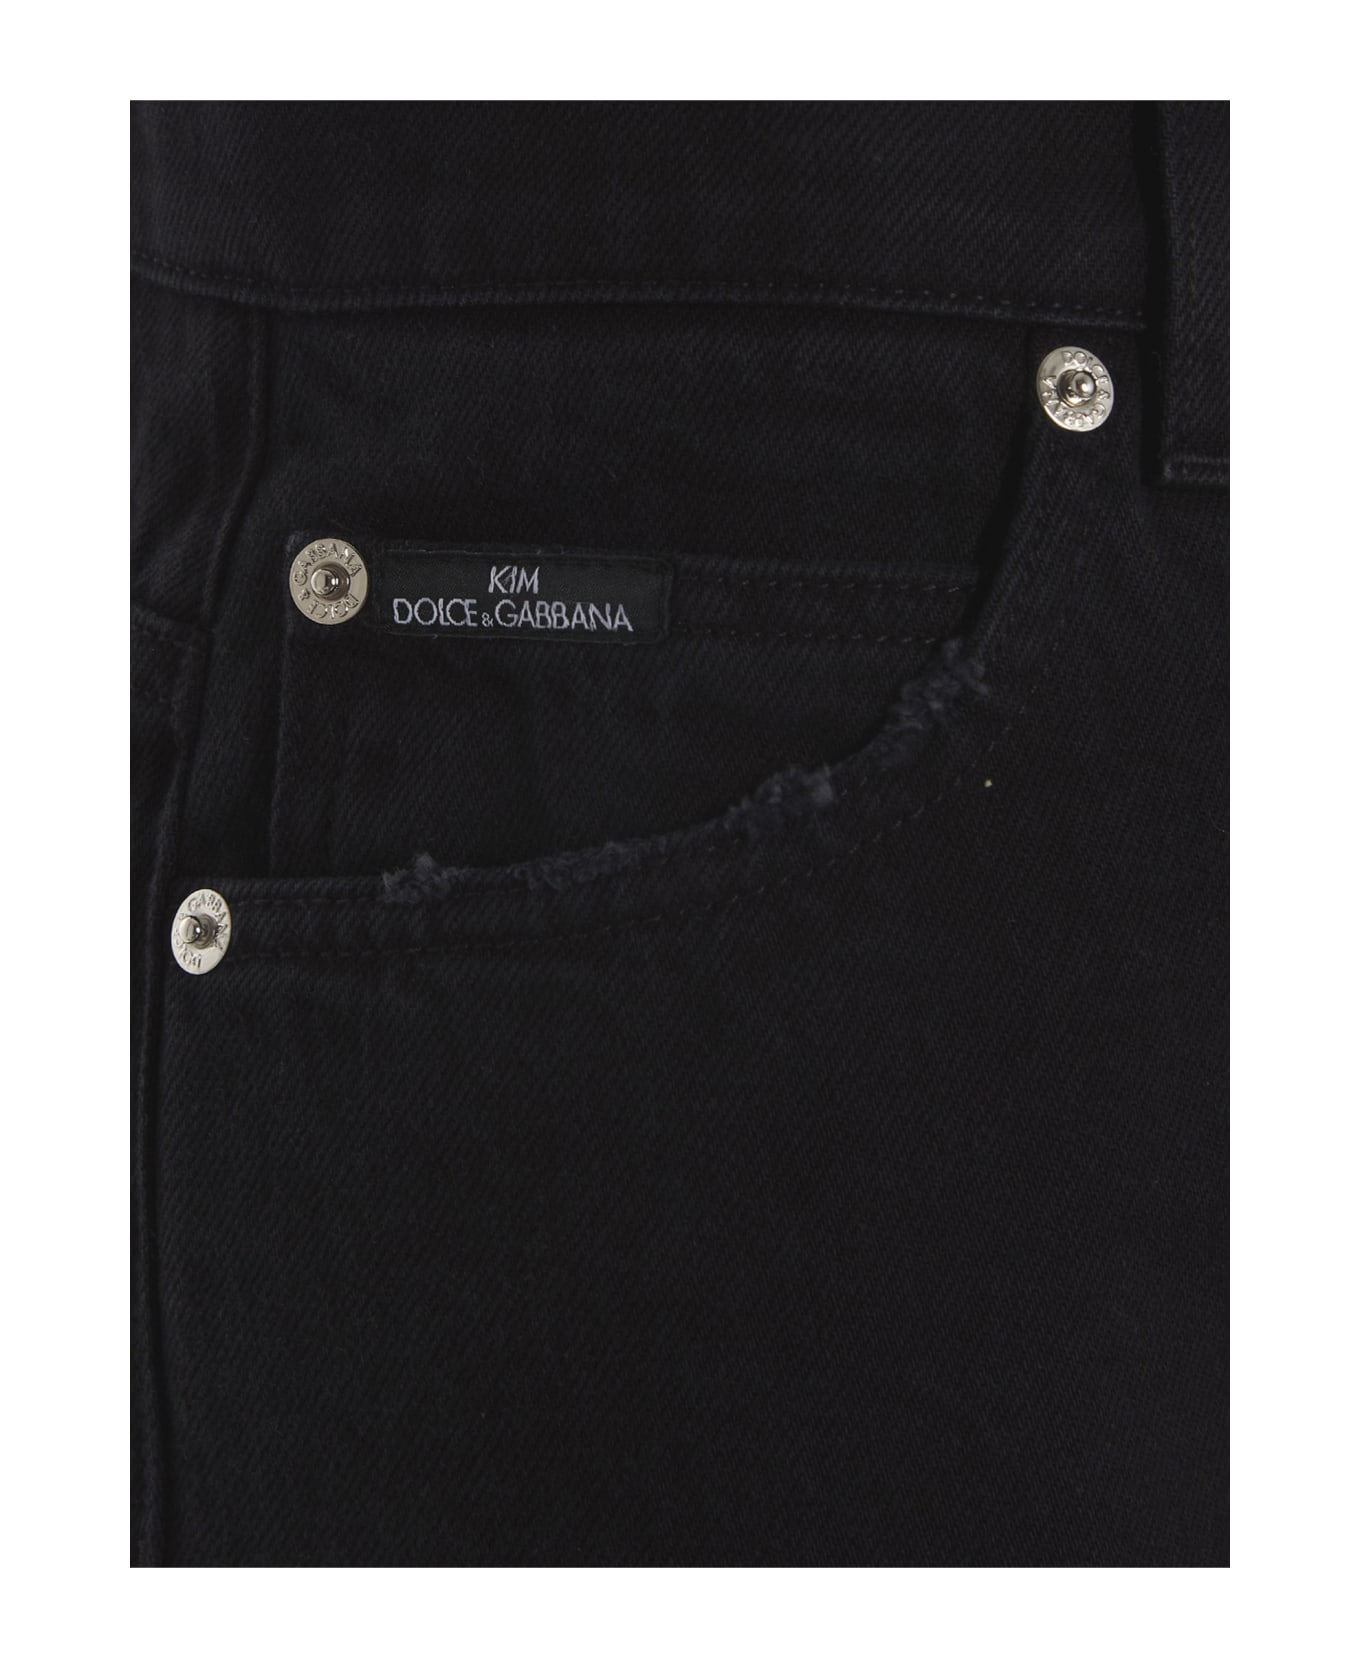 Dolce & Gabbana Jeans 'kim Dolce&gabbana' - Blue